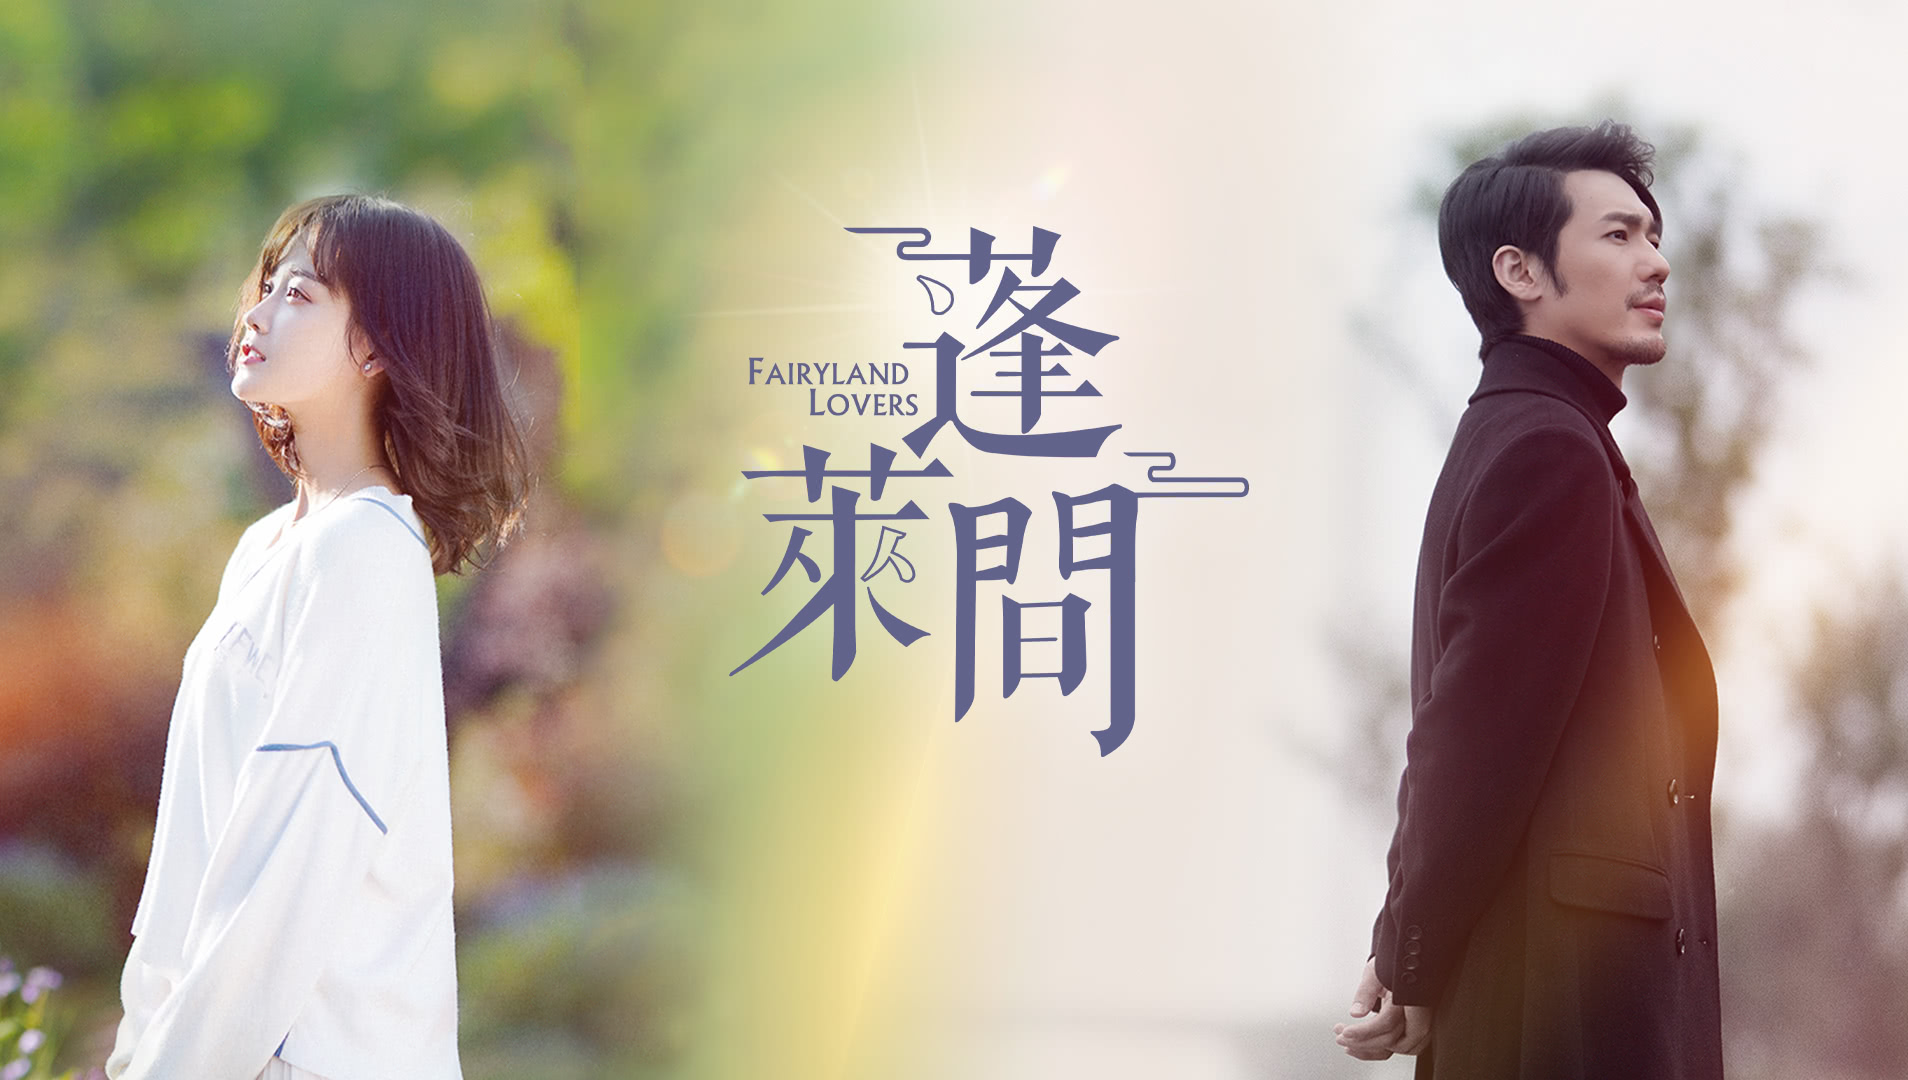 Fairyland Lovers - Asyalog.com, en güncel Asya dizileri çevirileri